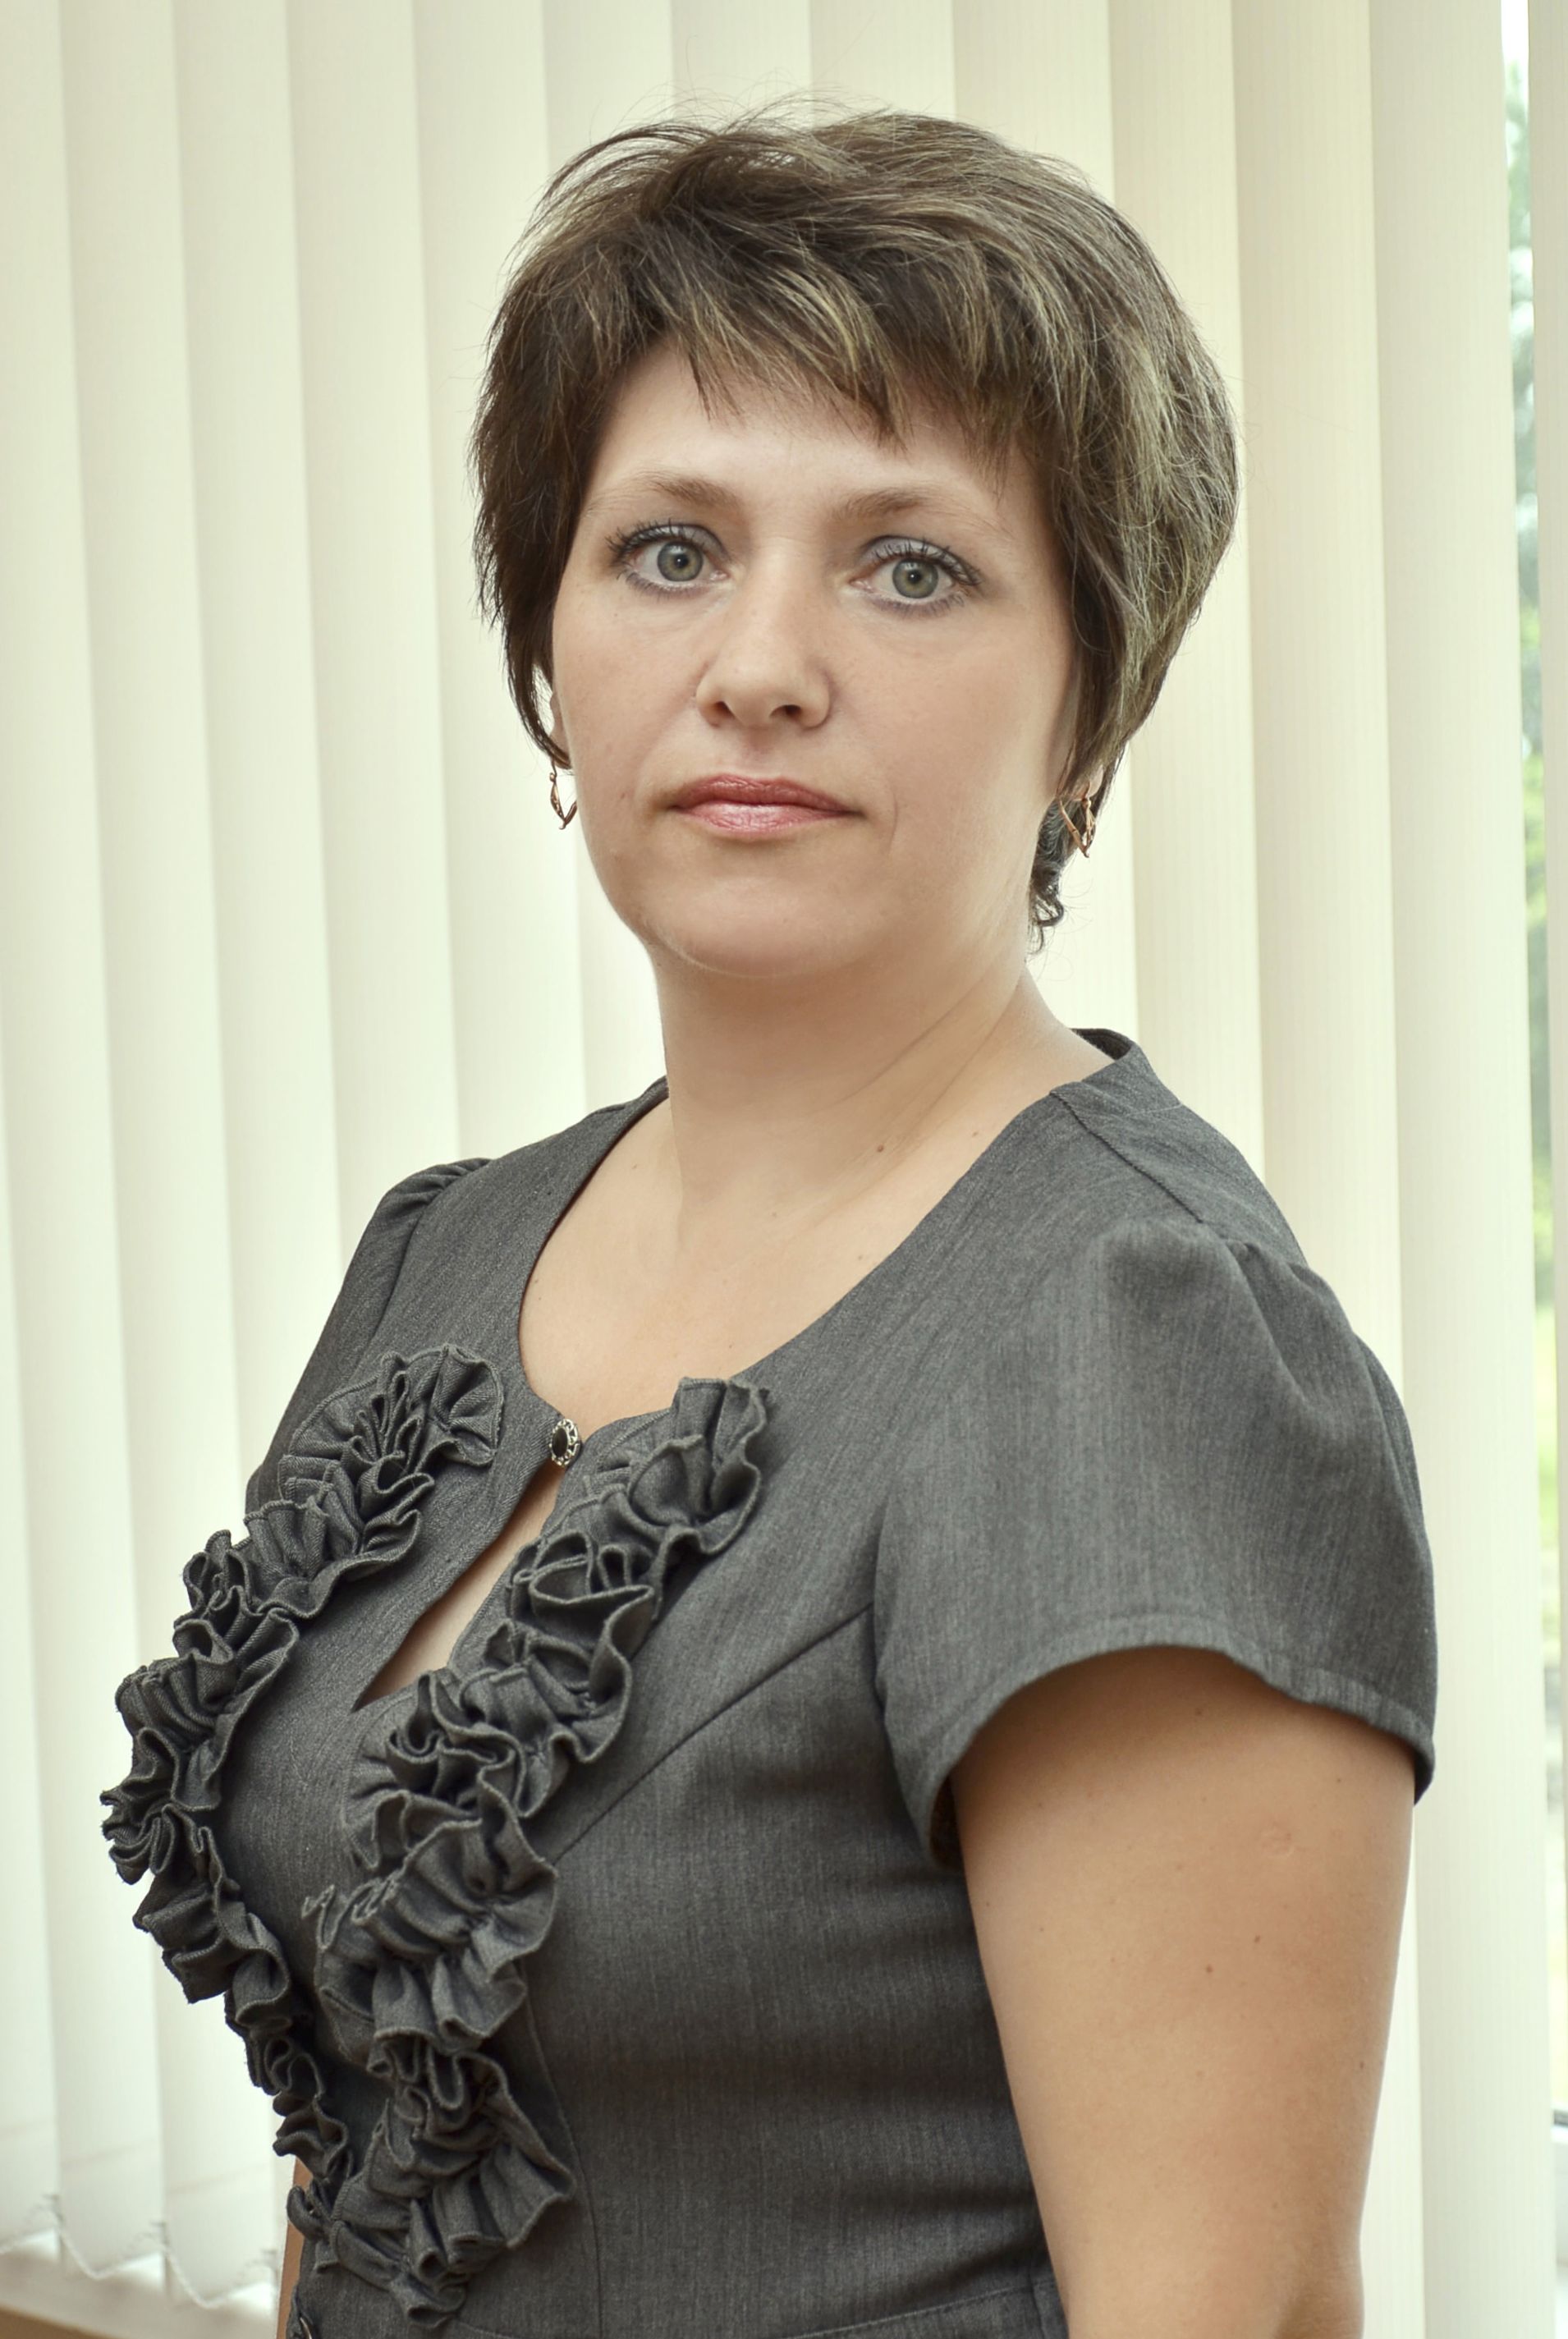 Савченко Елена Владимировна заняла I место в конкурсе и поправу считается "Учитель года" 2014-2015 г.